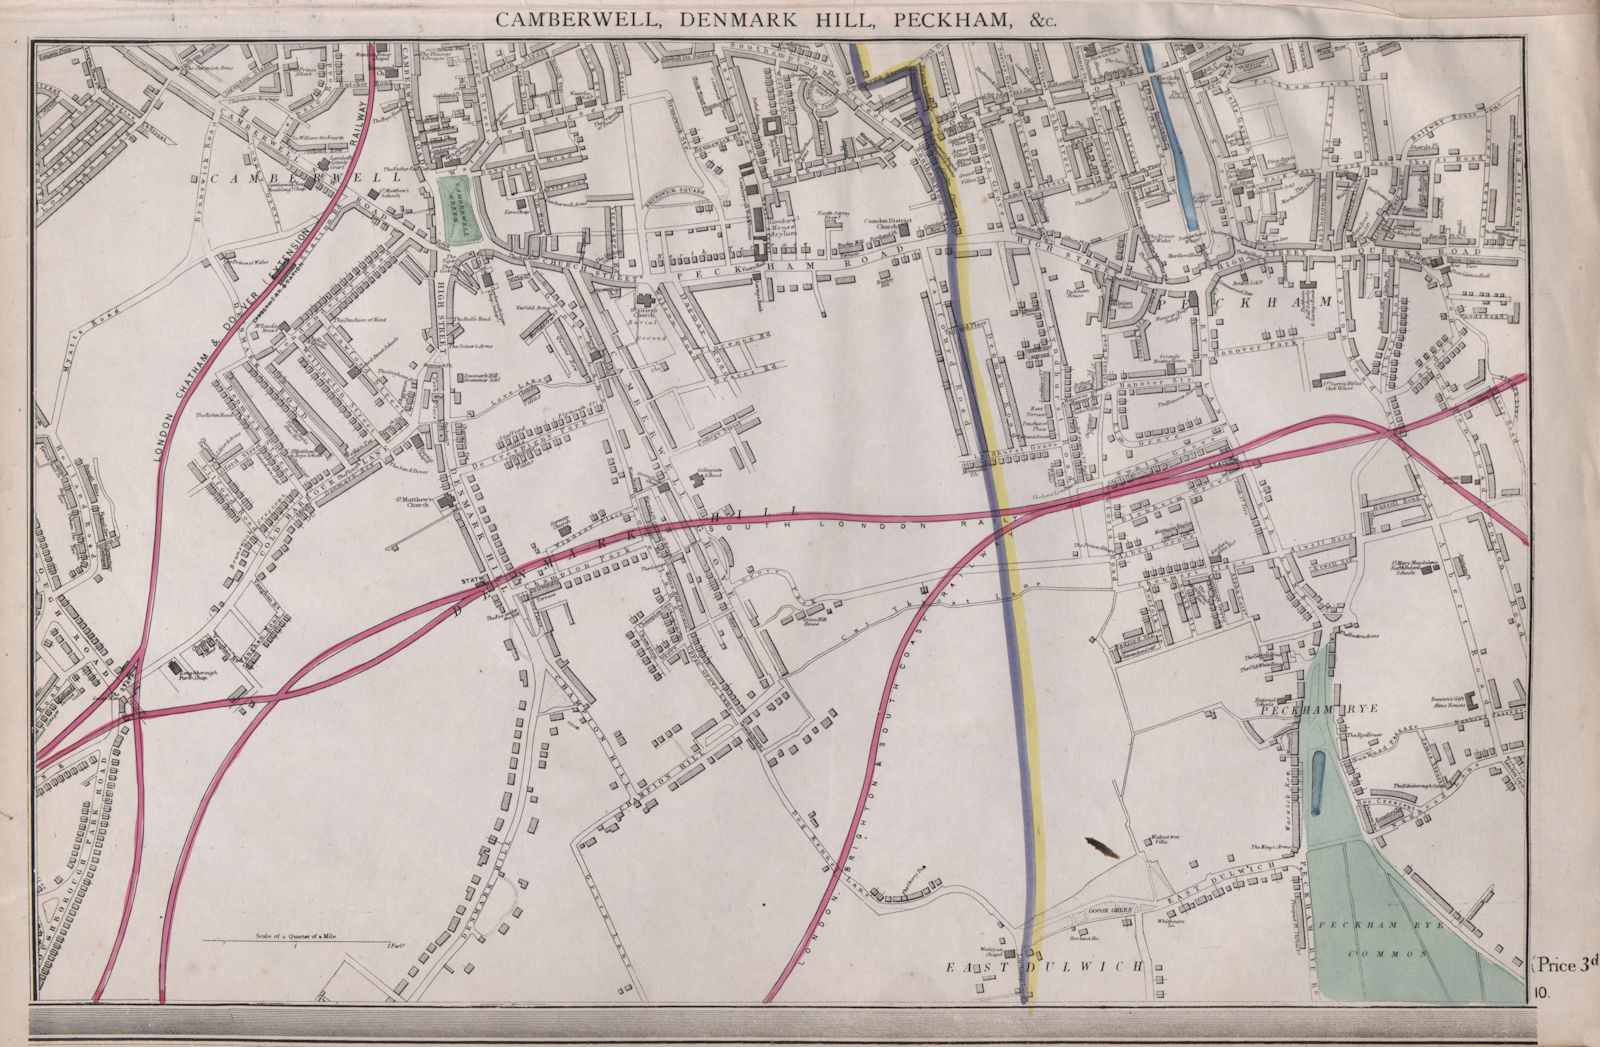 Associate Product SOUTH LONDON. Peckham/Rye East Dulwich Camberwell Denmark Hill. WELLER 1868 map